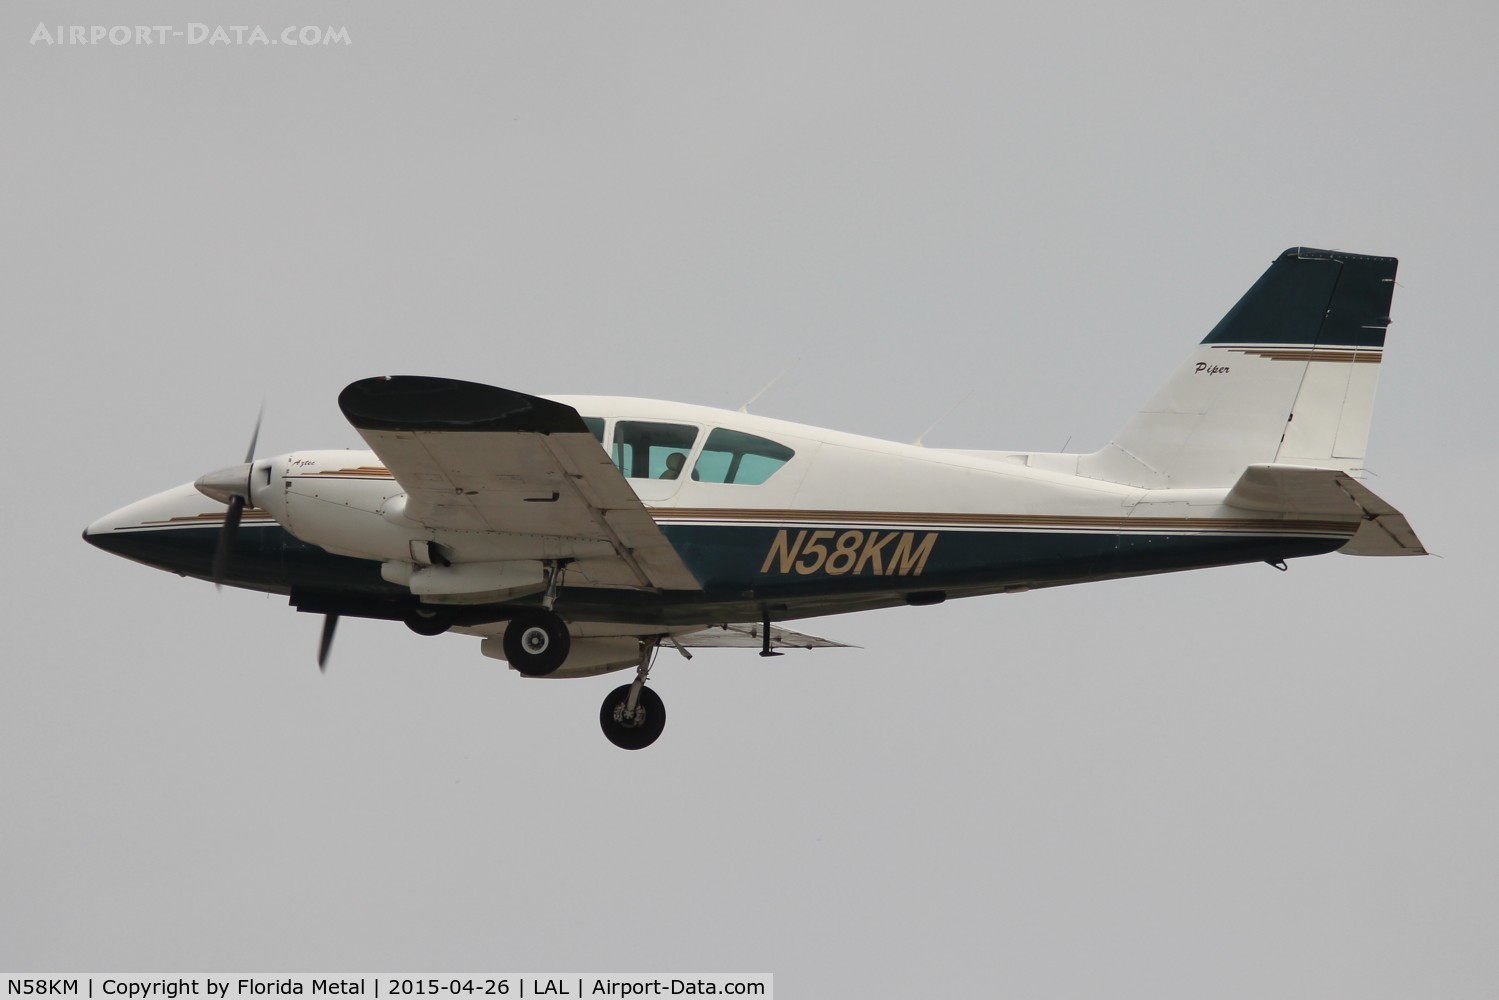 N58KM, 1974 Piper PA-23-250 Aztec C/N 27-7405440, PA-23-250